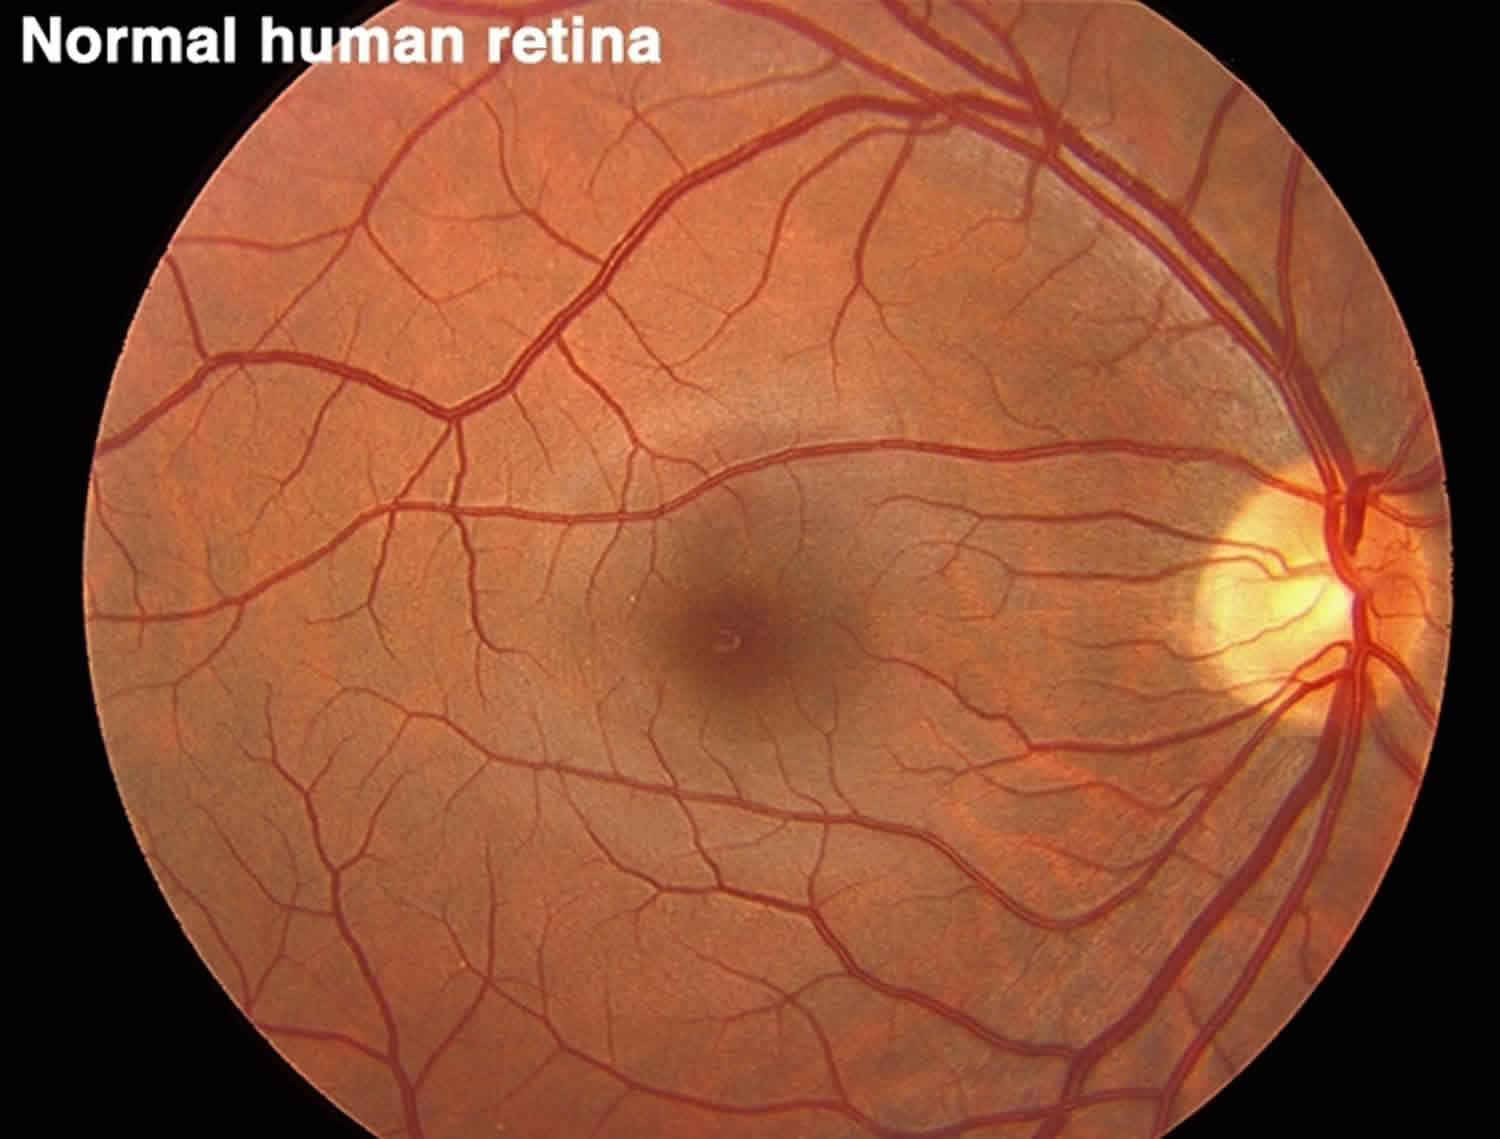 Normal human retina